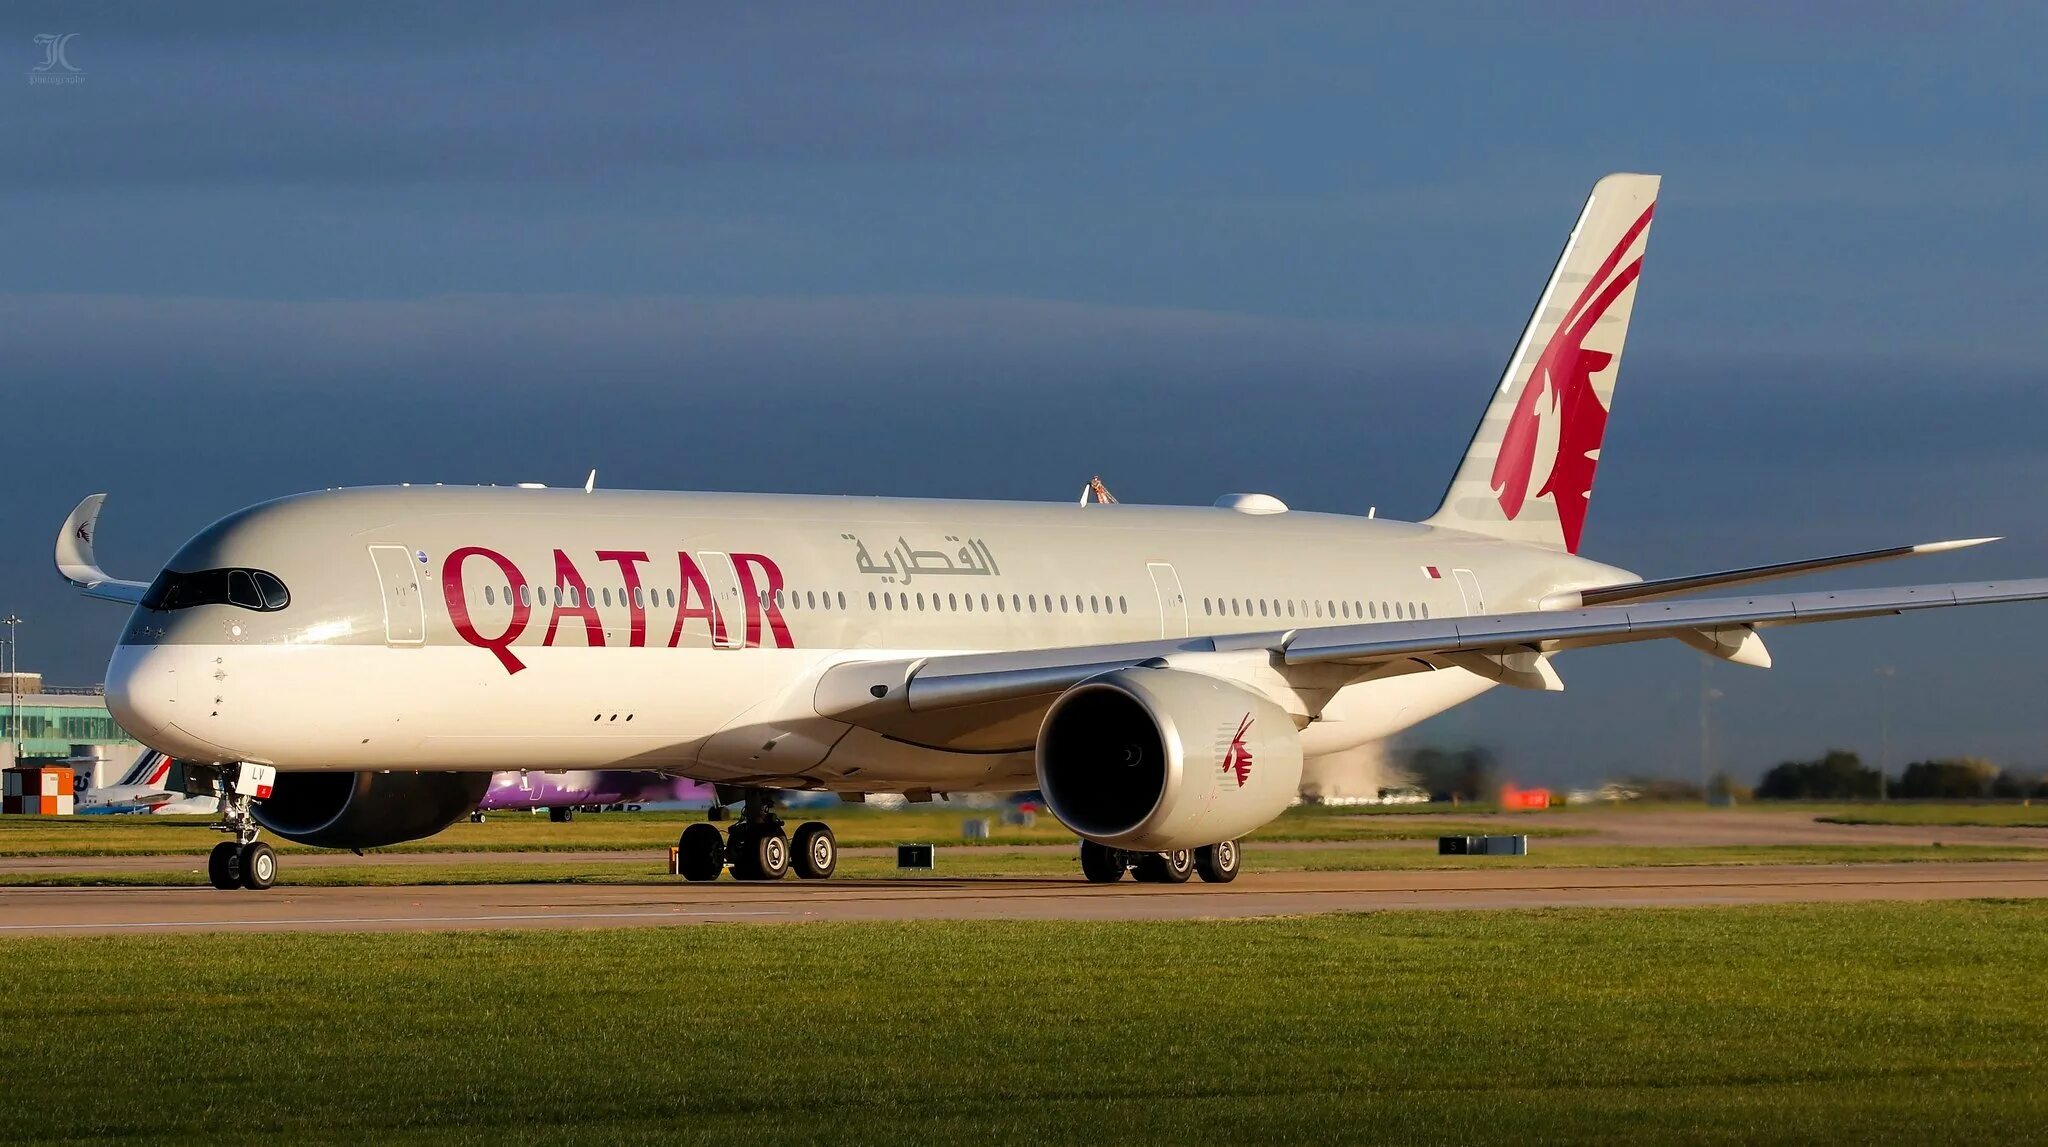 Катар дав. Катар авиакомпания. Самолет Катар Эйрвейз. Доха Катар авиакомпания. Авиакомпания Qatar Airways самолеты.